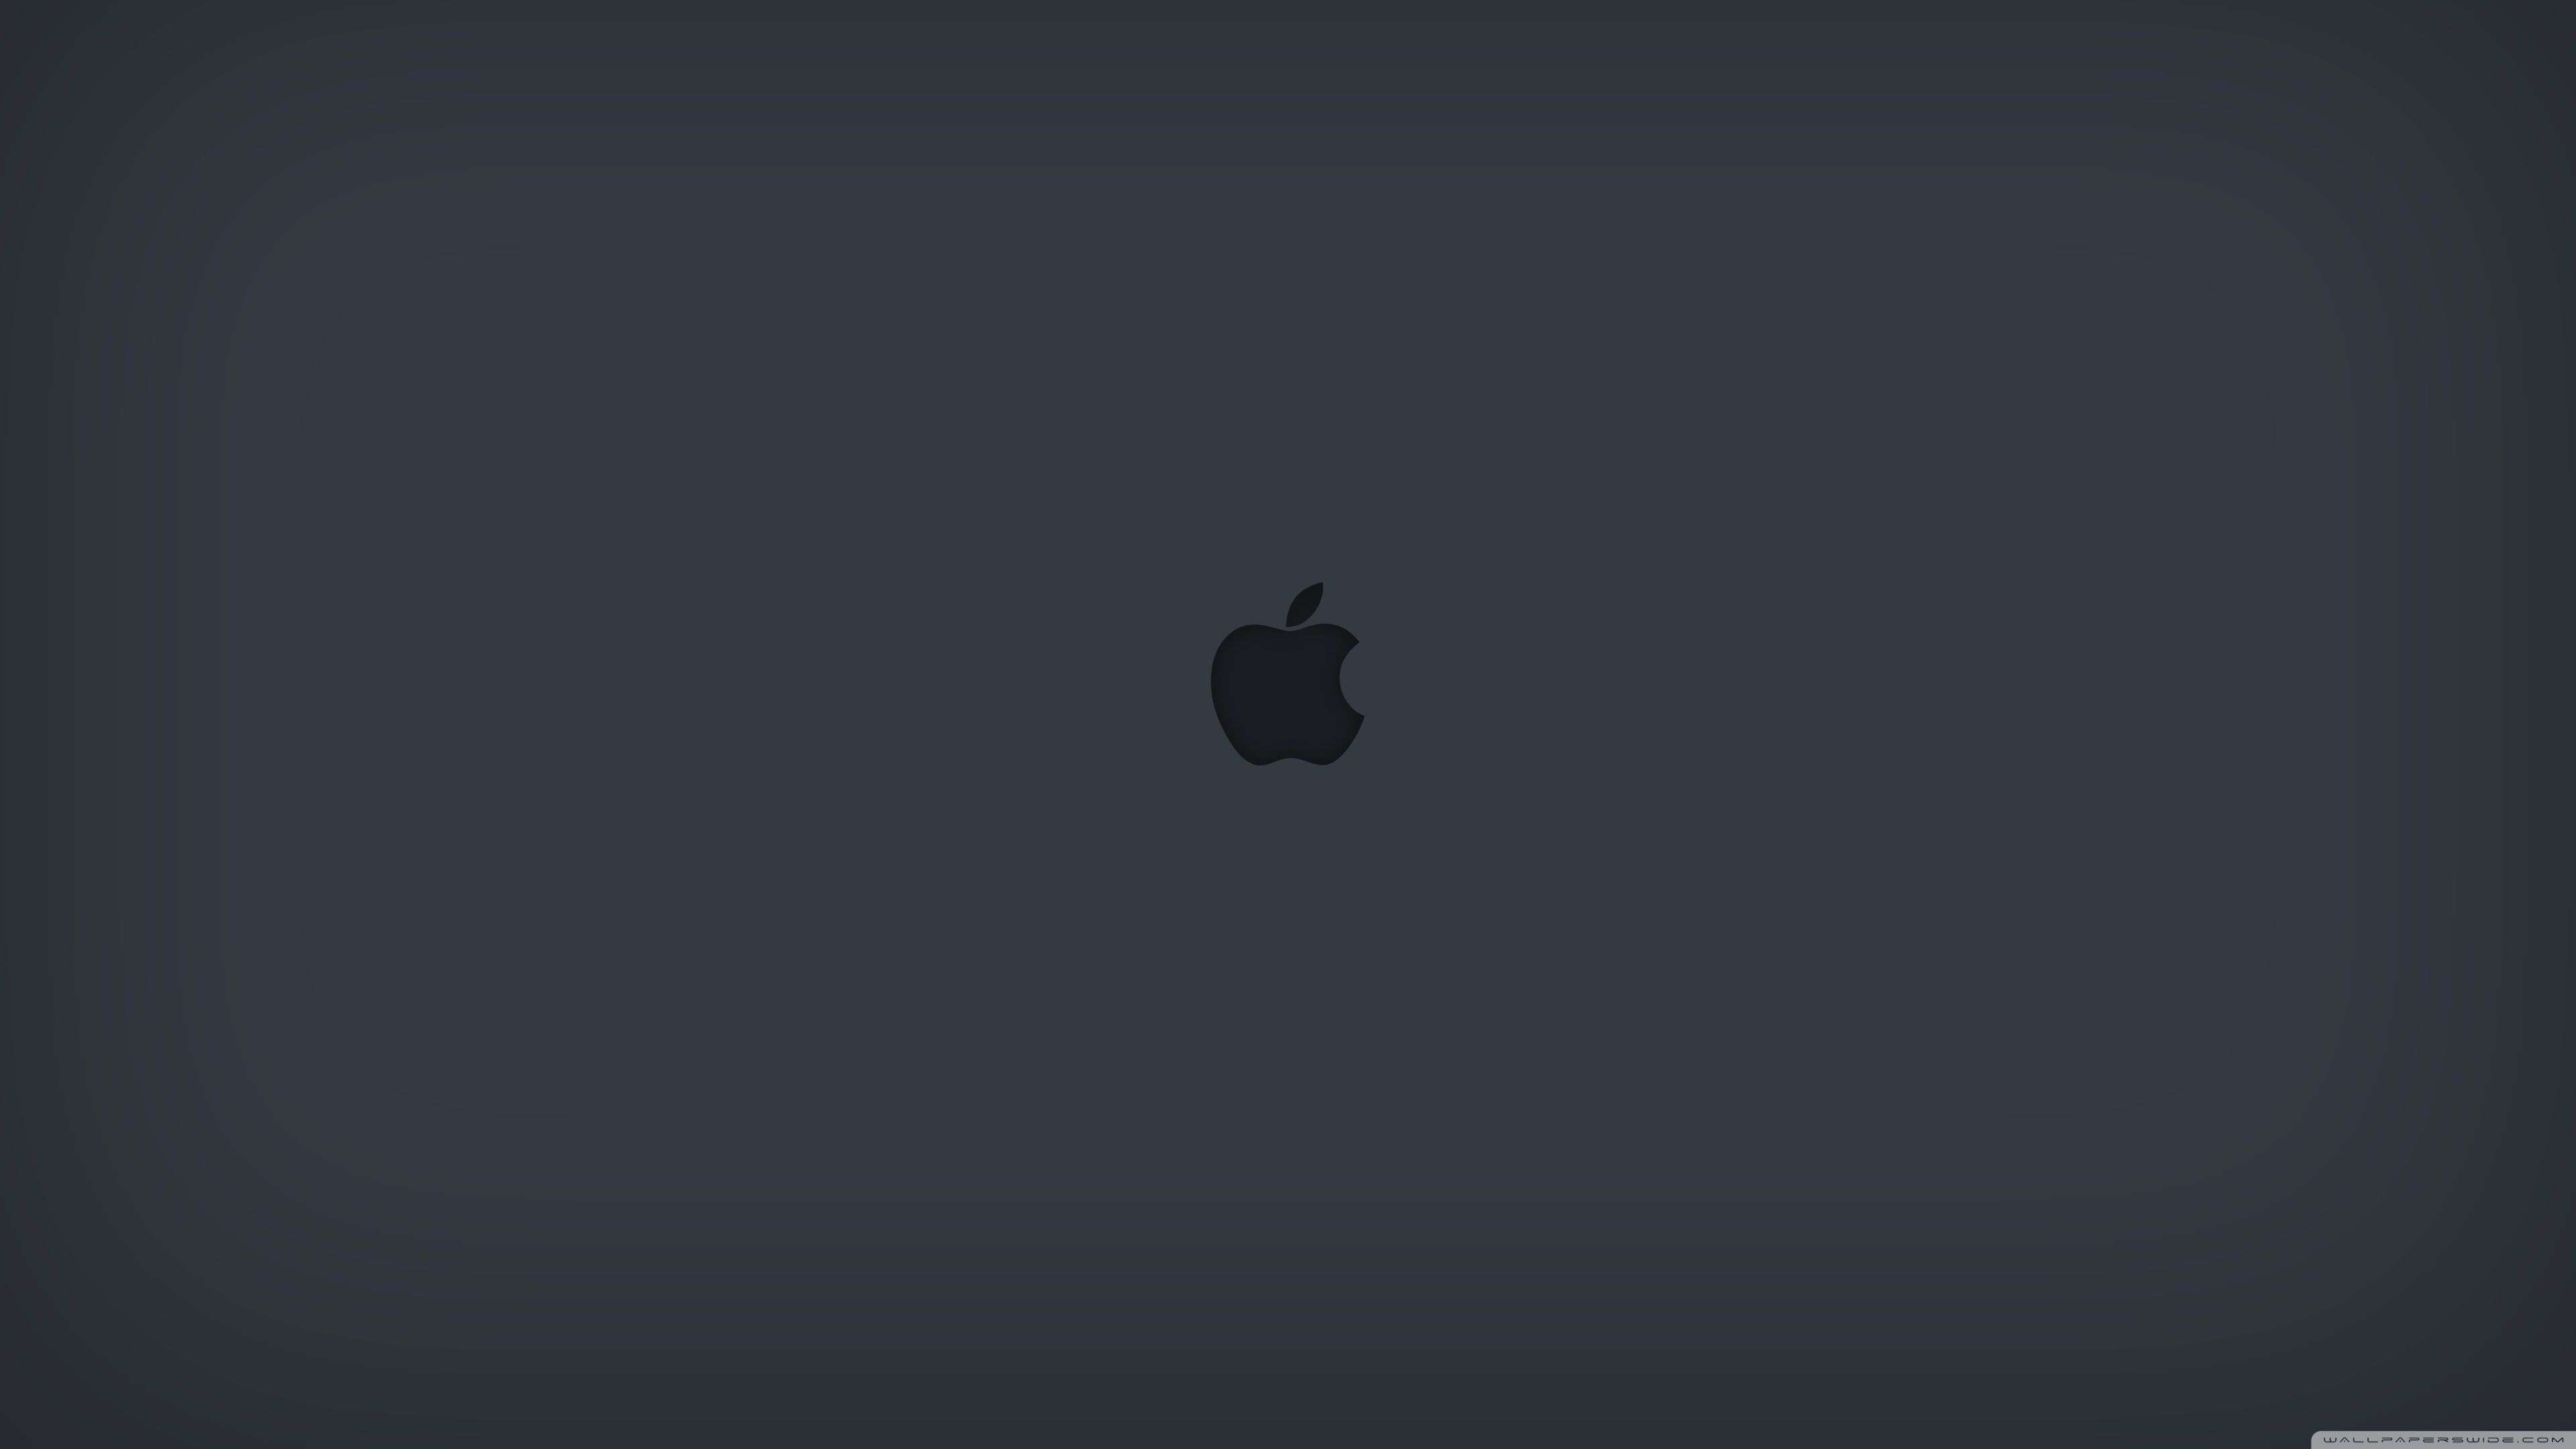 Apple Logo Wallpaper 4k For Mac